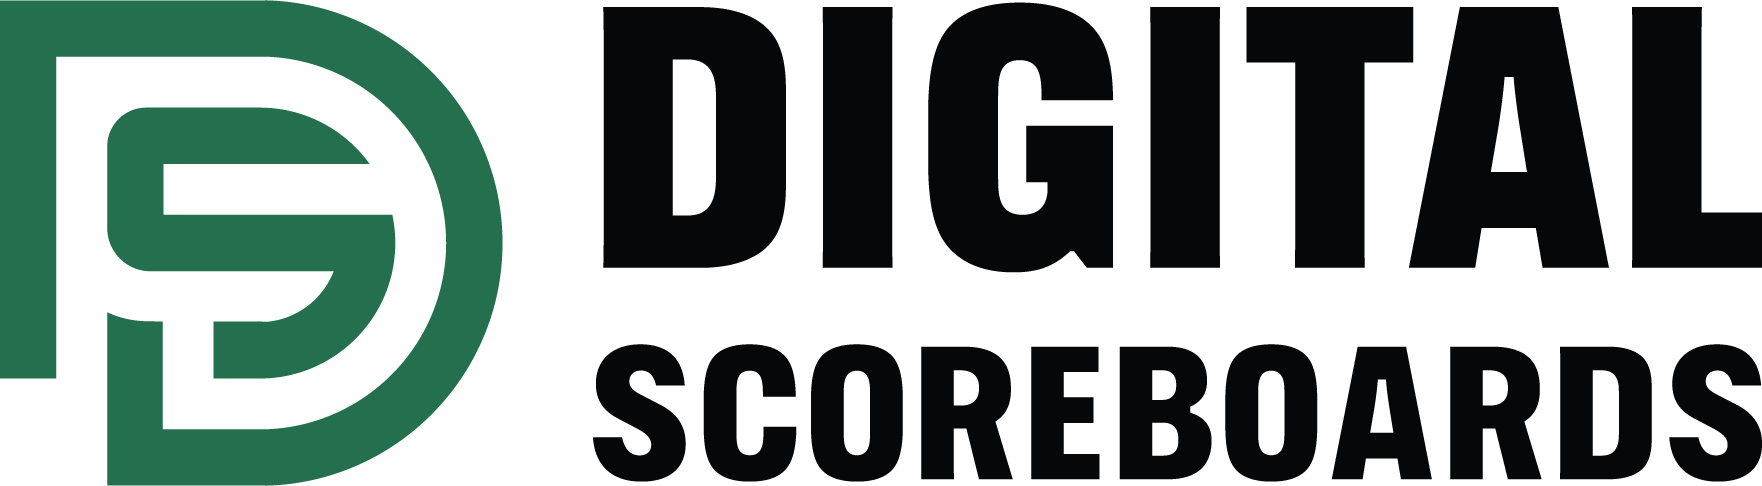 Digital Scoreboards